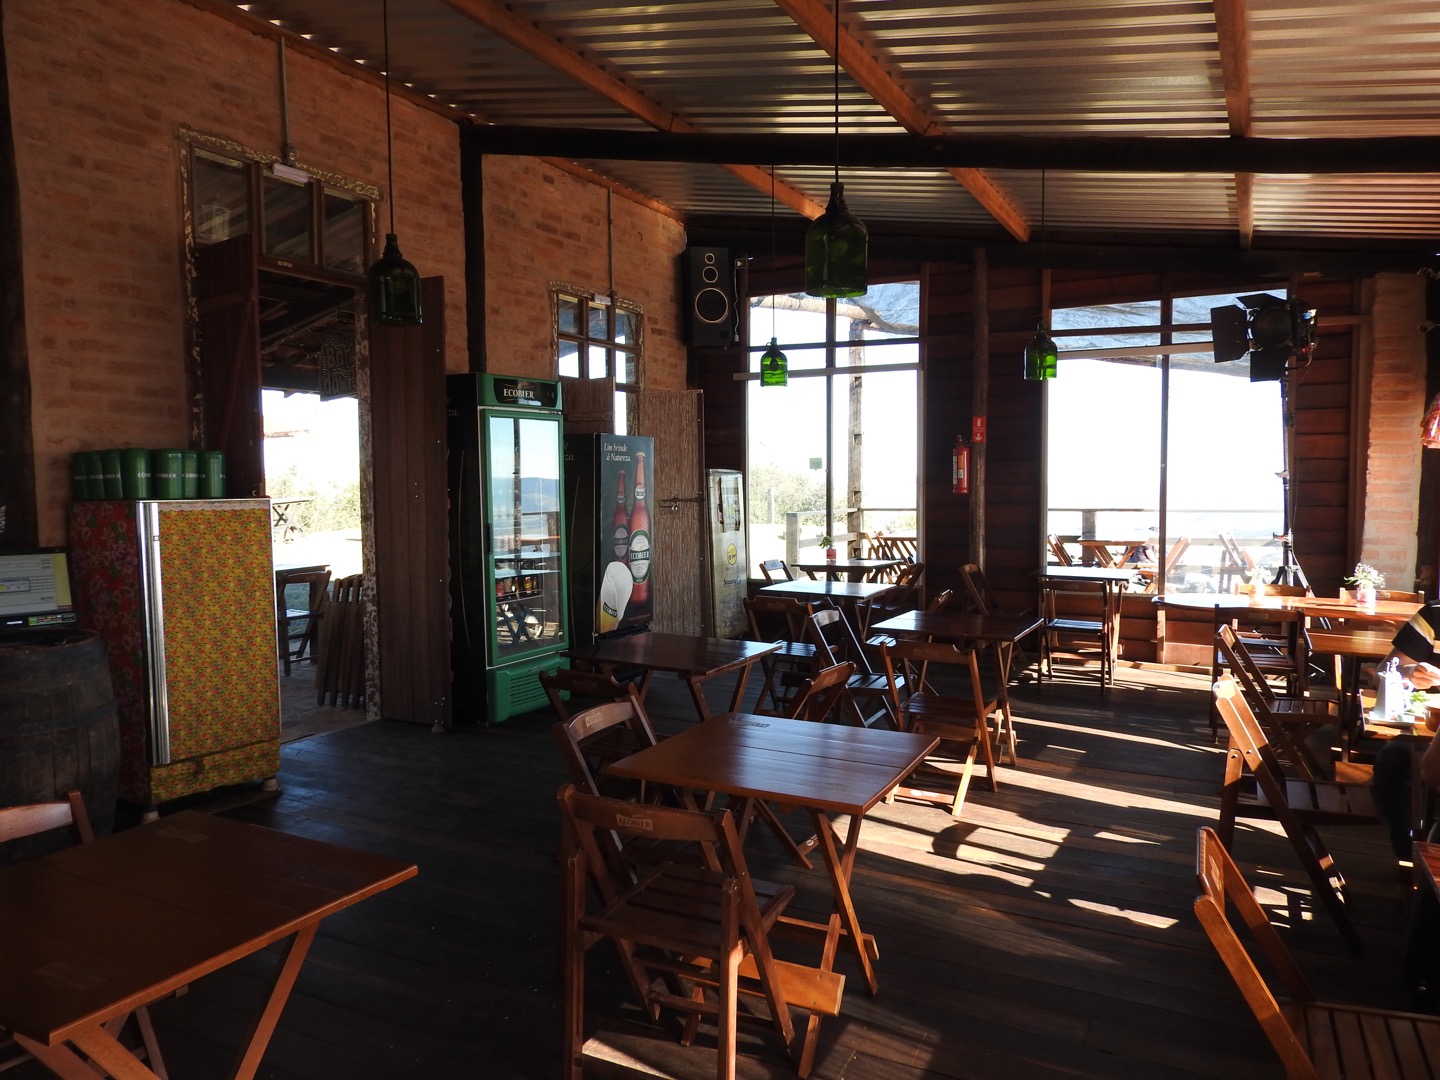 Área interna do restaurante Bar da Pedra (Foto: Alessandra Maróstica)